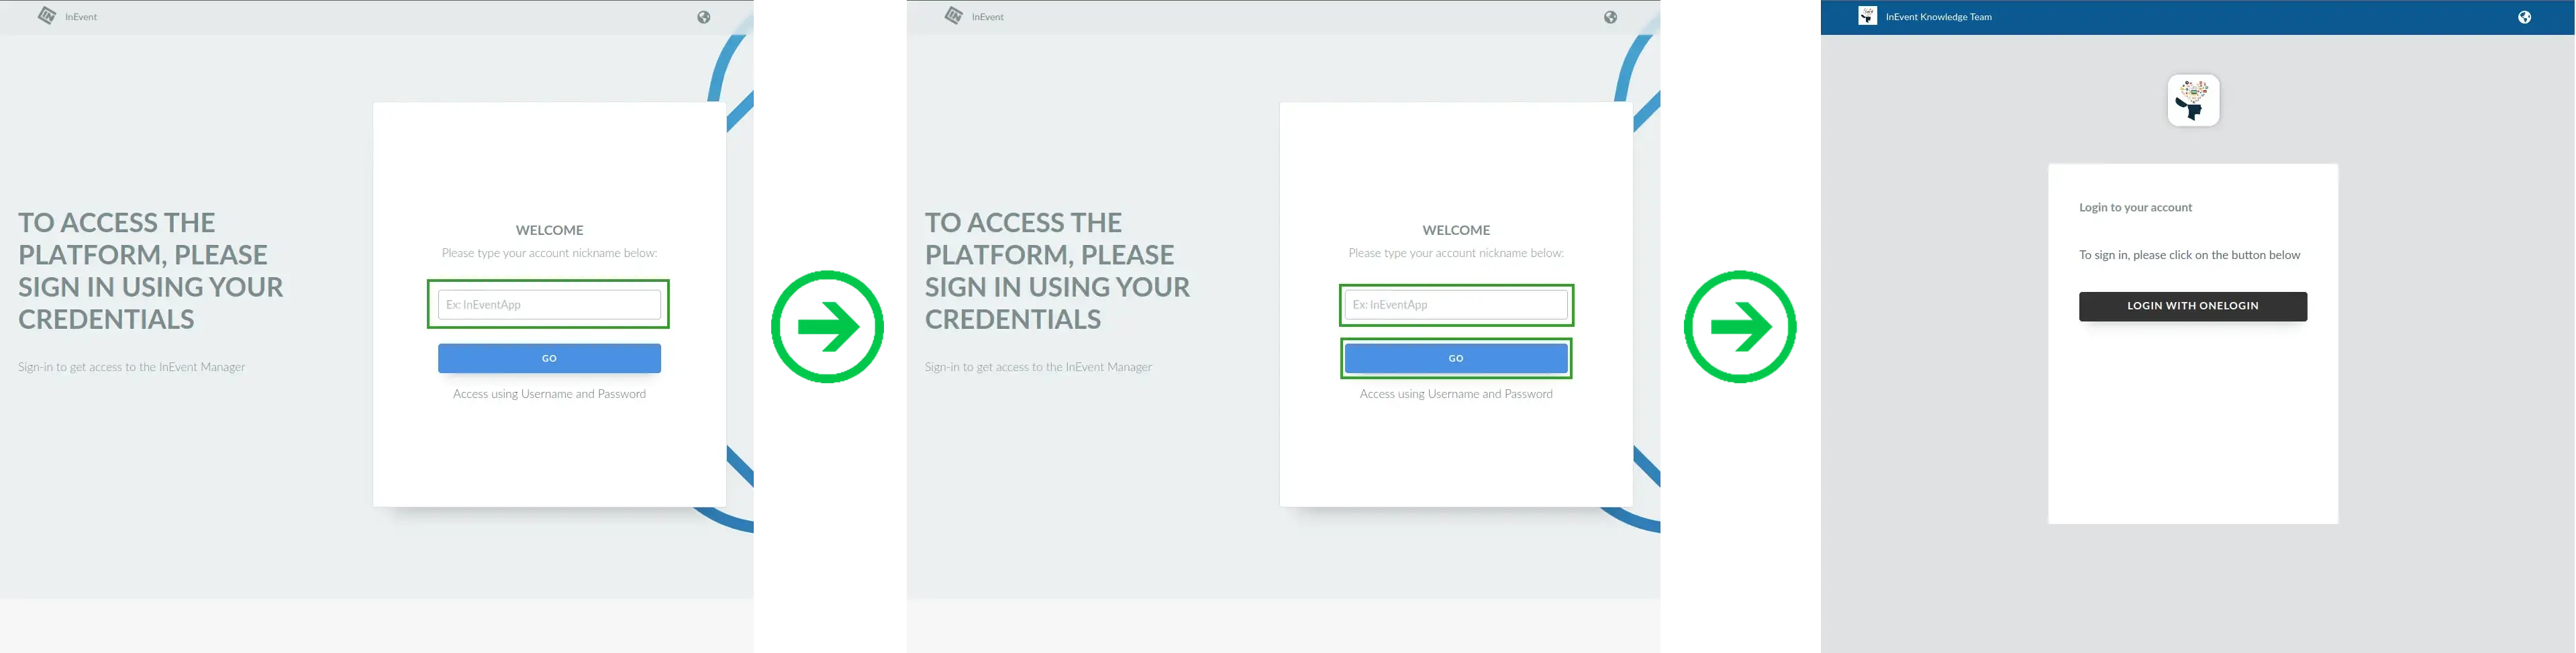 Screenshots showing the log in flow using an Enterprise account.